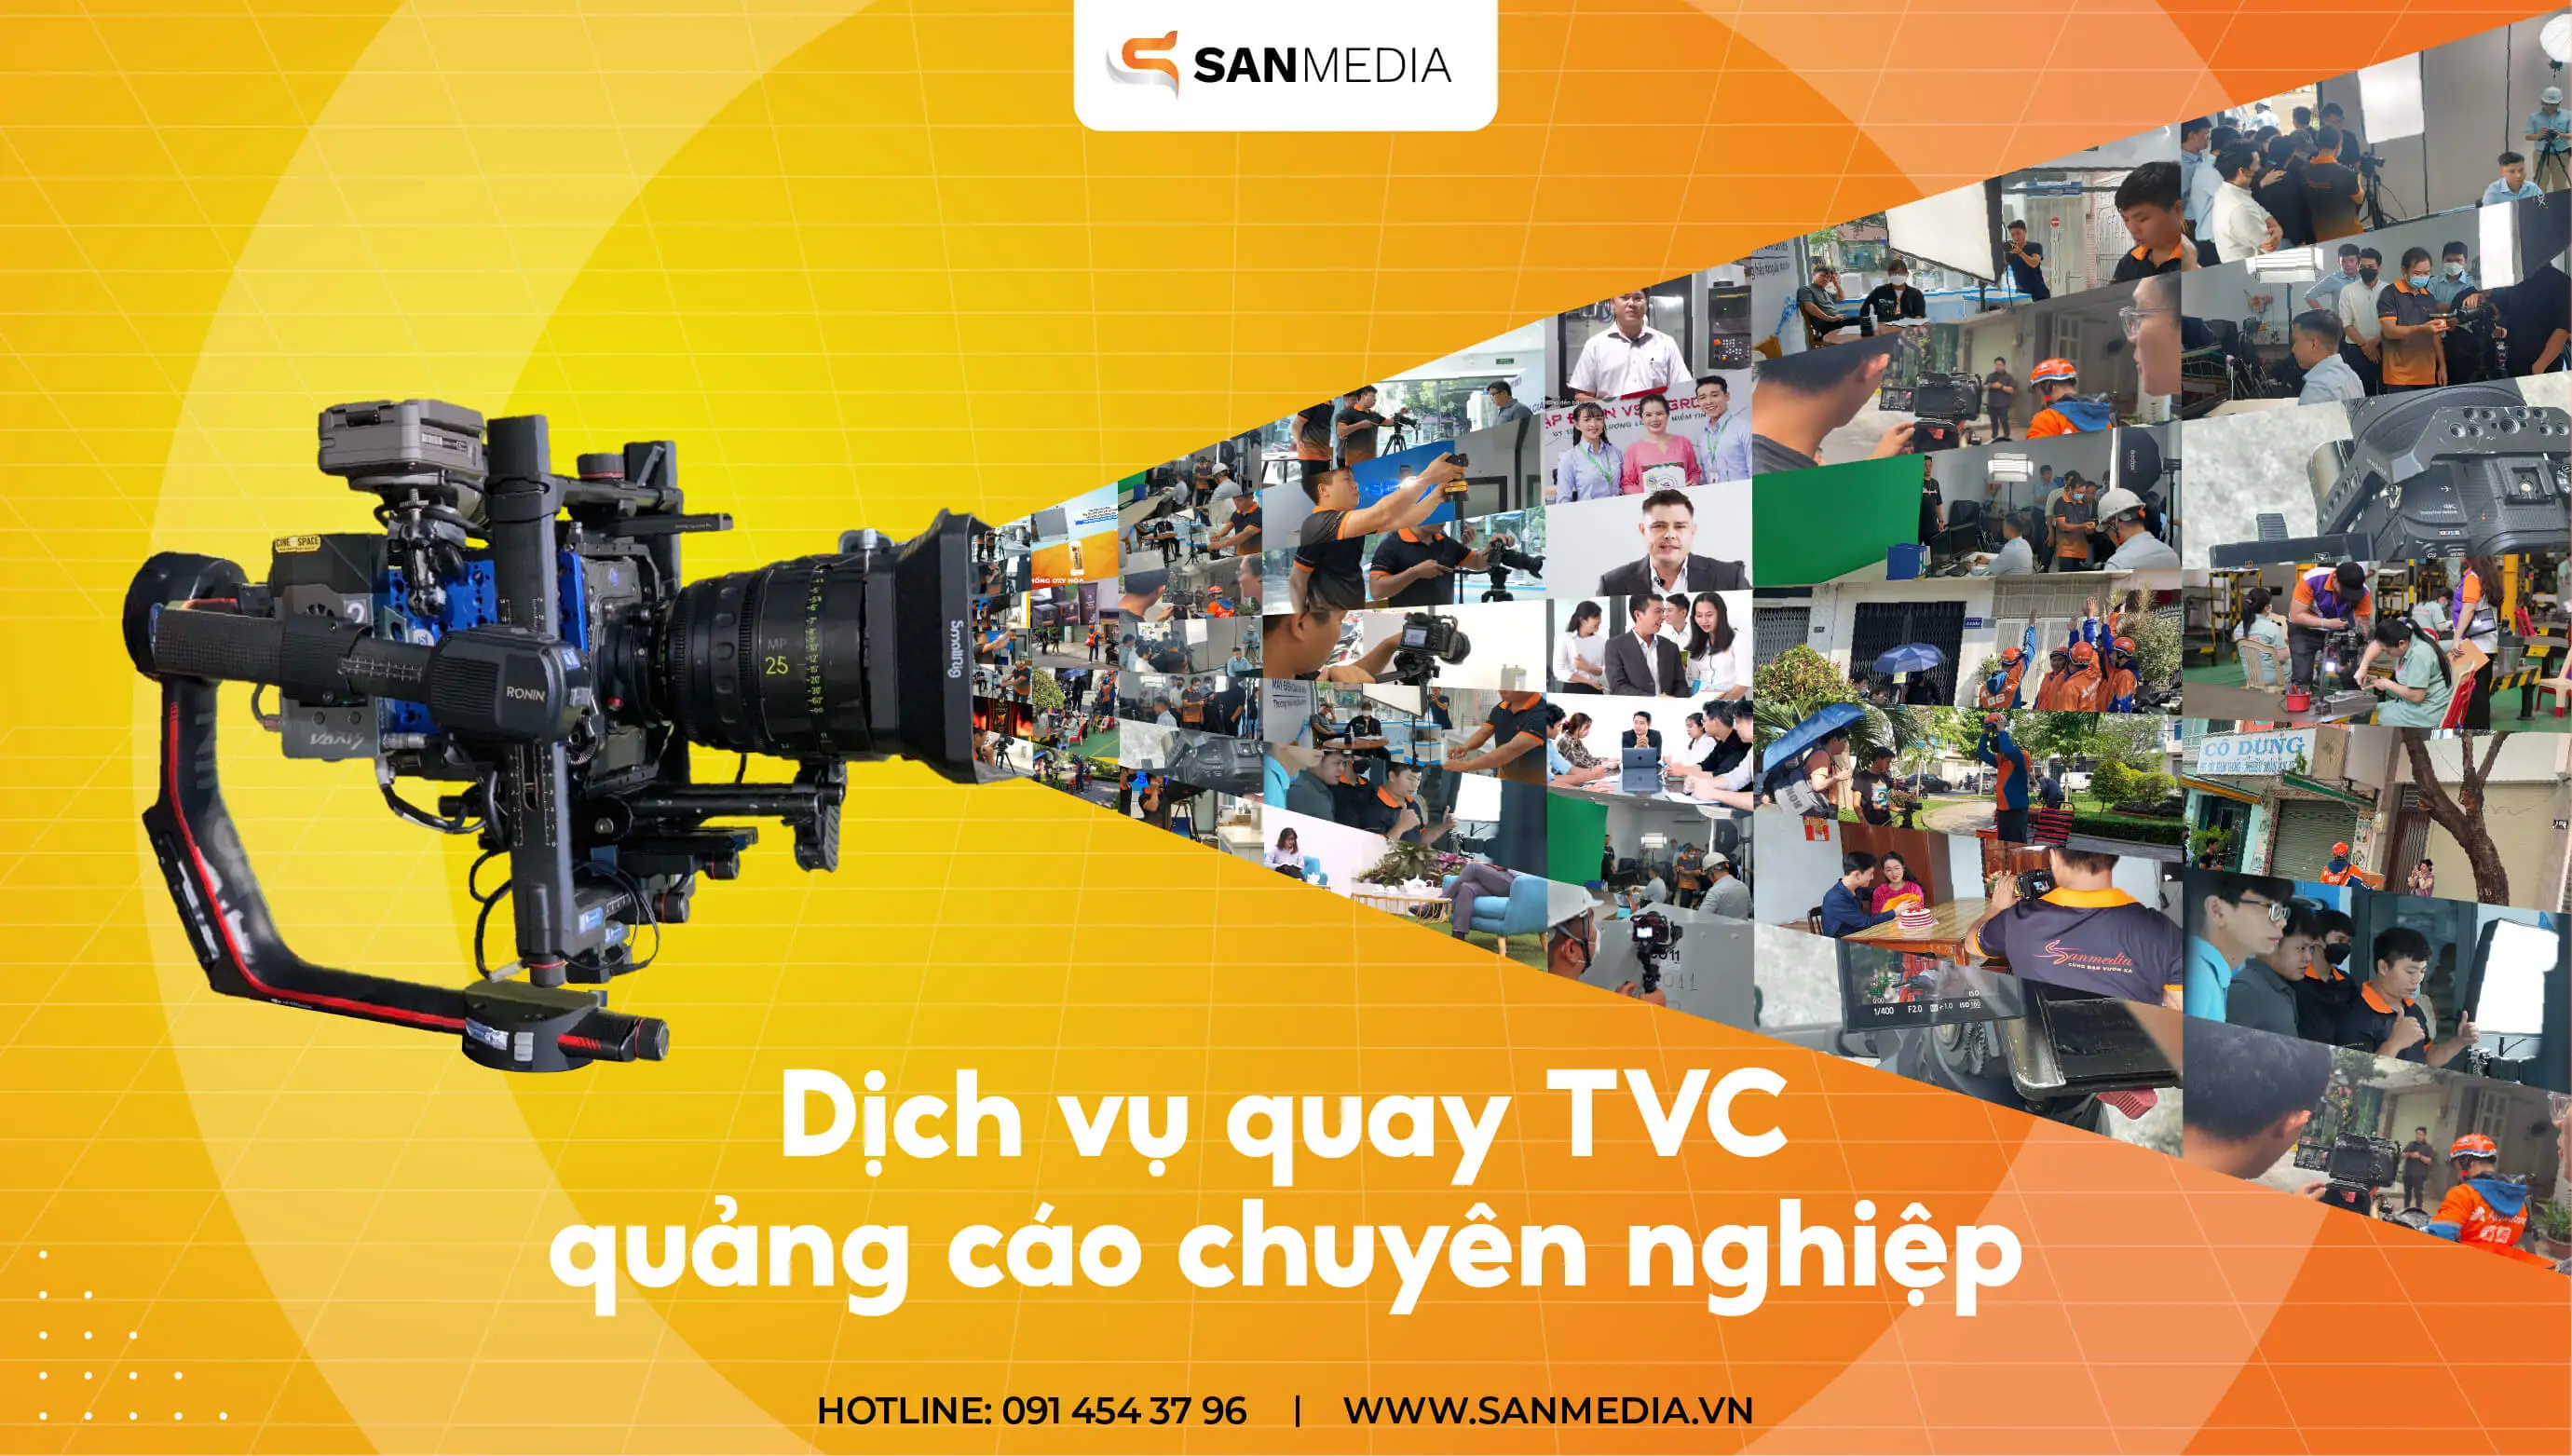 Dịch vụ quay TVC quảng cáo chuyên nghiệp - SanMedia 